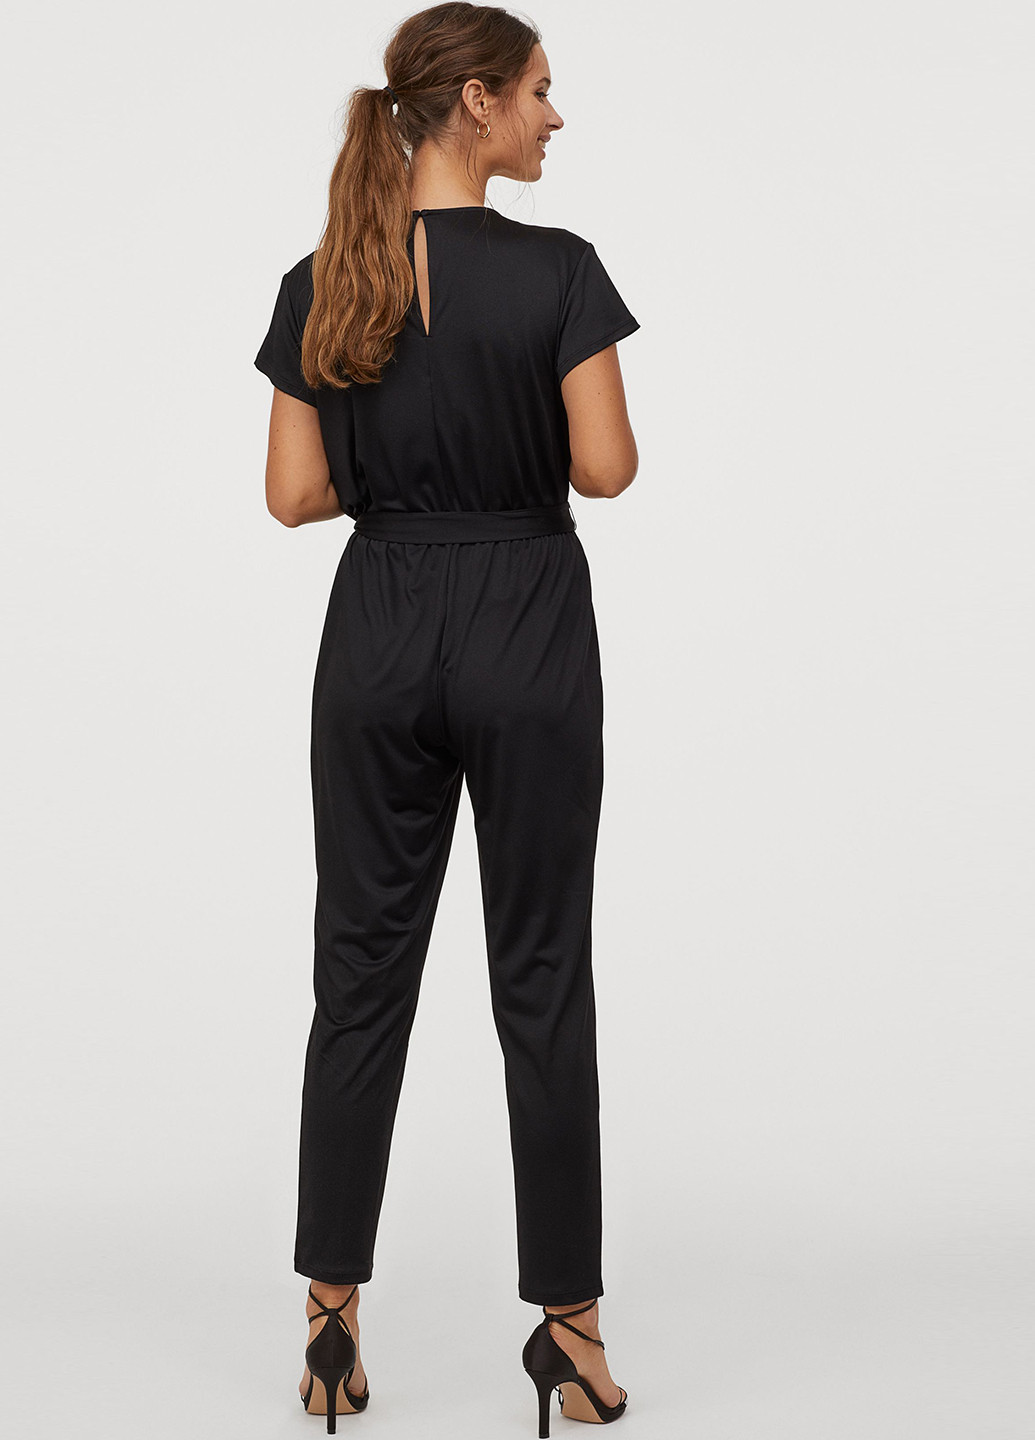 Комбинезон для кормящих H&M комбинезон-брюки однотонный чёрный кэжуал полиэстер